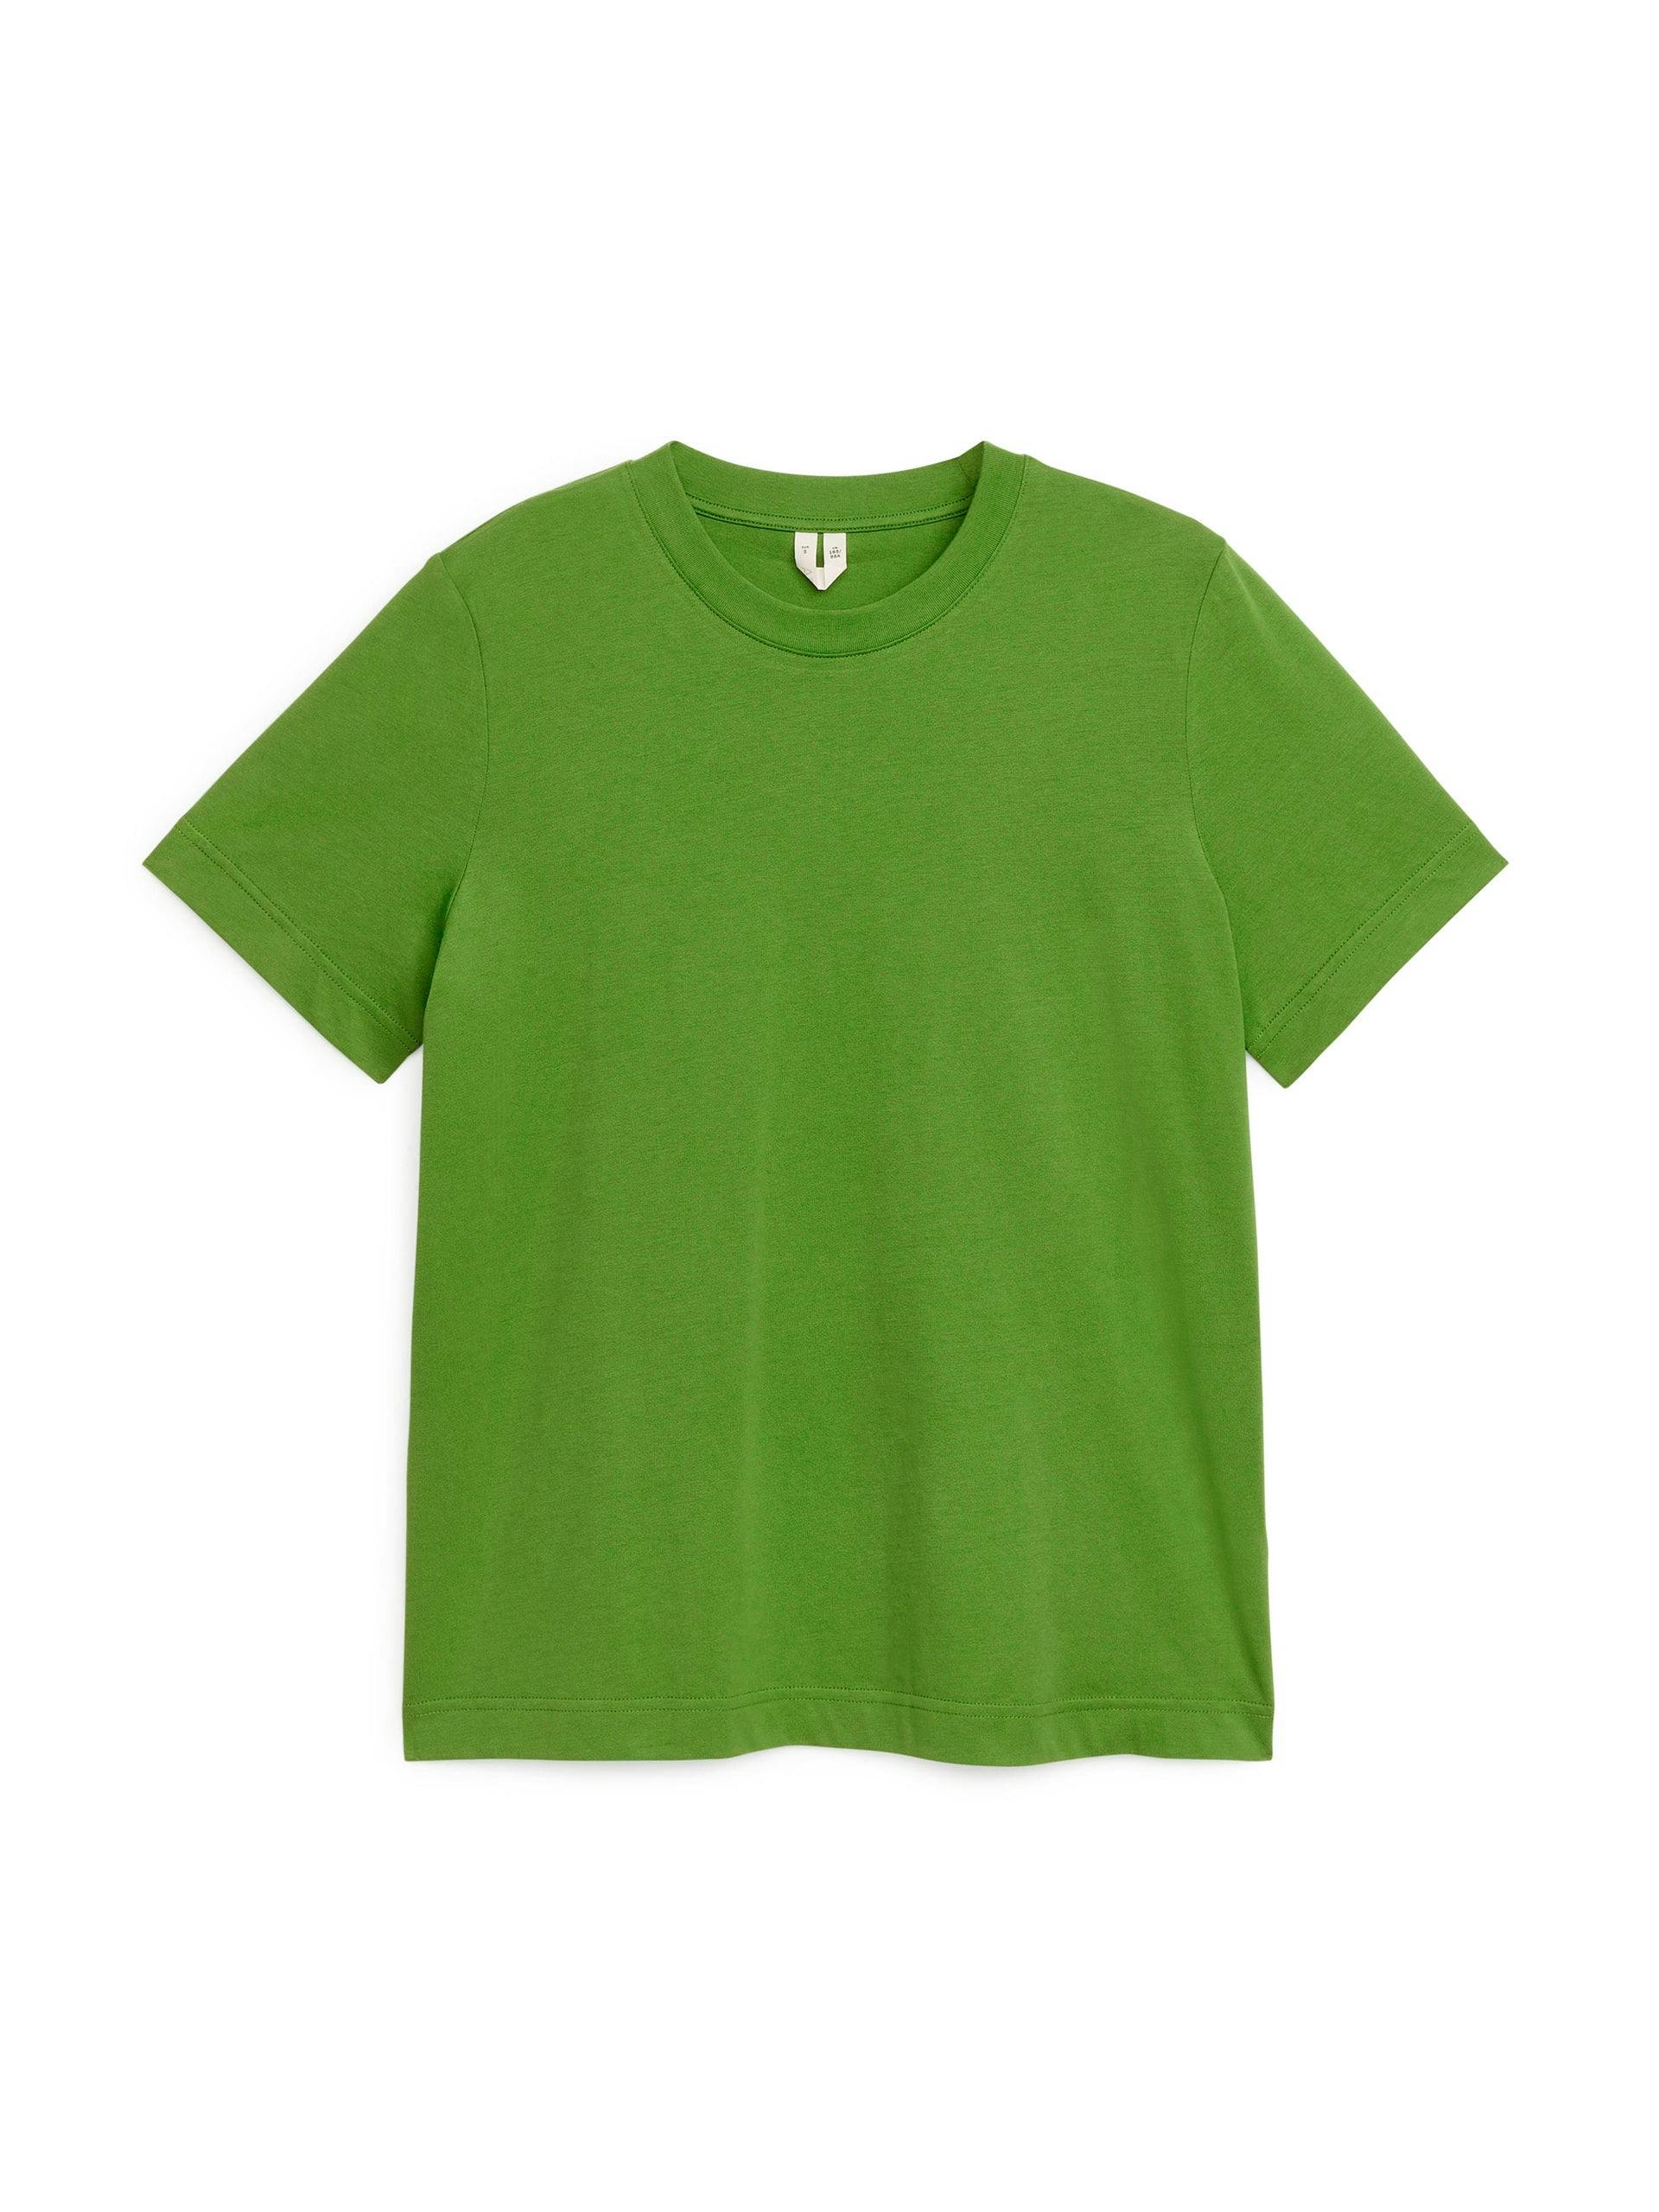 Green crew-neck t-shirt